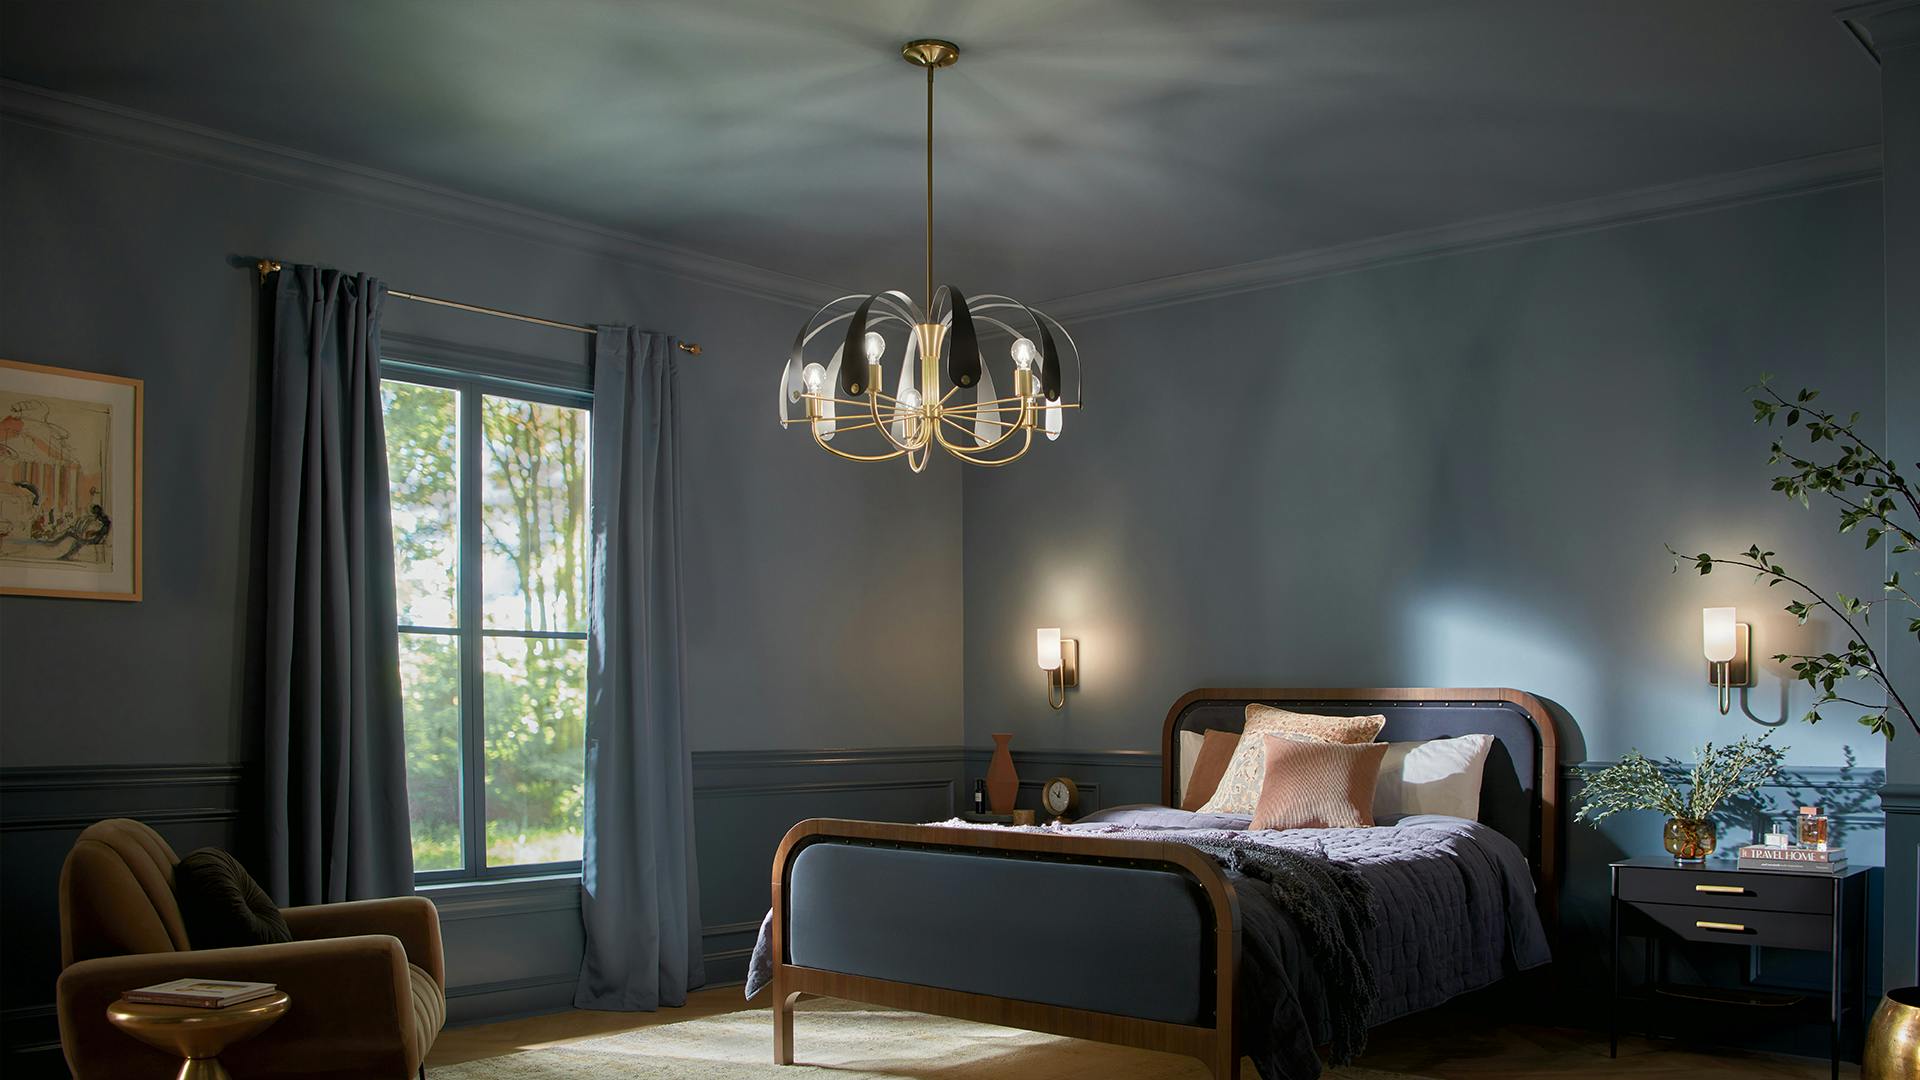 Petal Chandelier hanging over modern bedroom